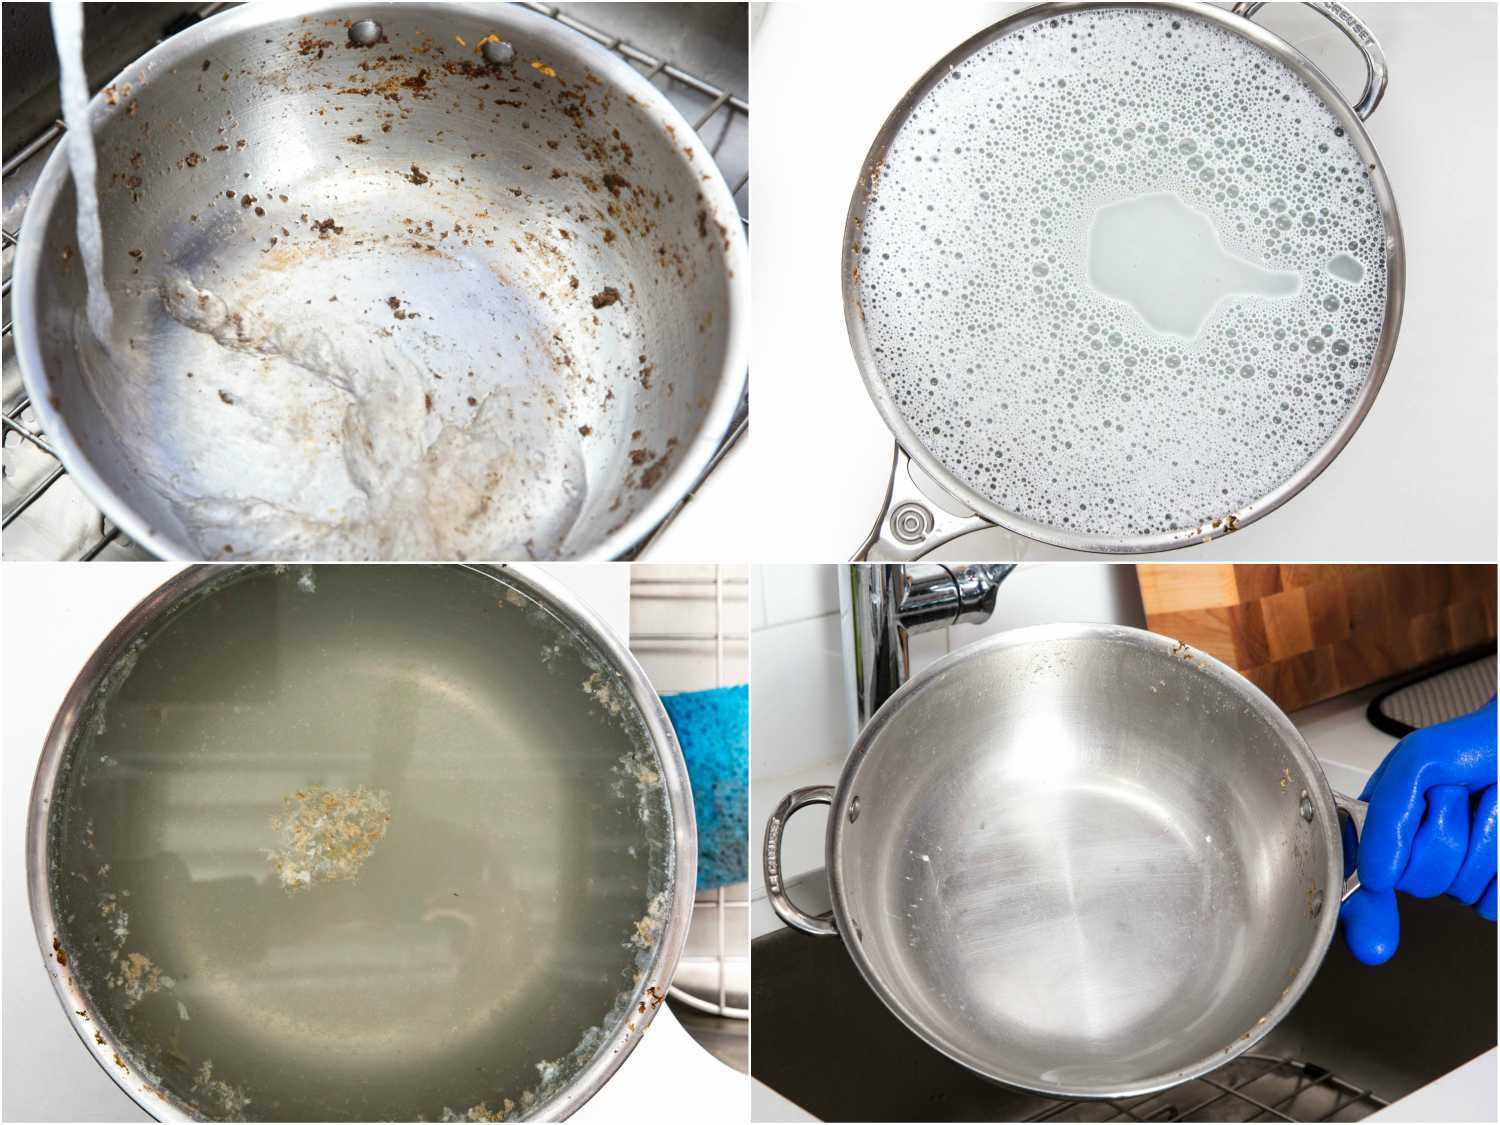 拼贴画展示了浸泡不锈钢锅的各个阶段:往脏锅里装满水，往水里加肥皂，水上面浮着食物碎片，洗干净锅